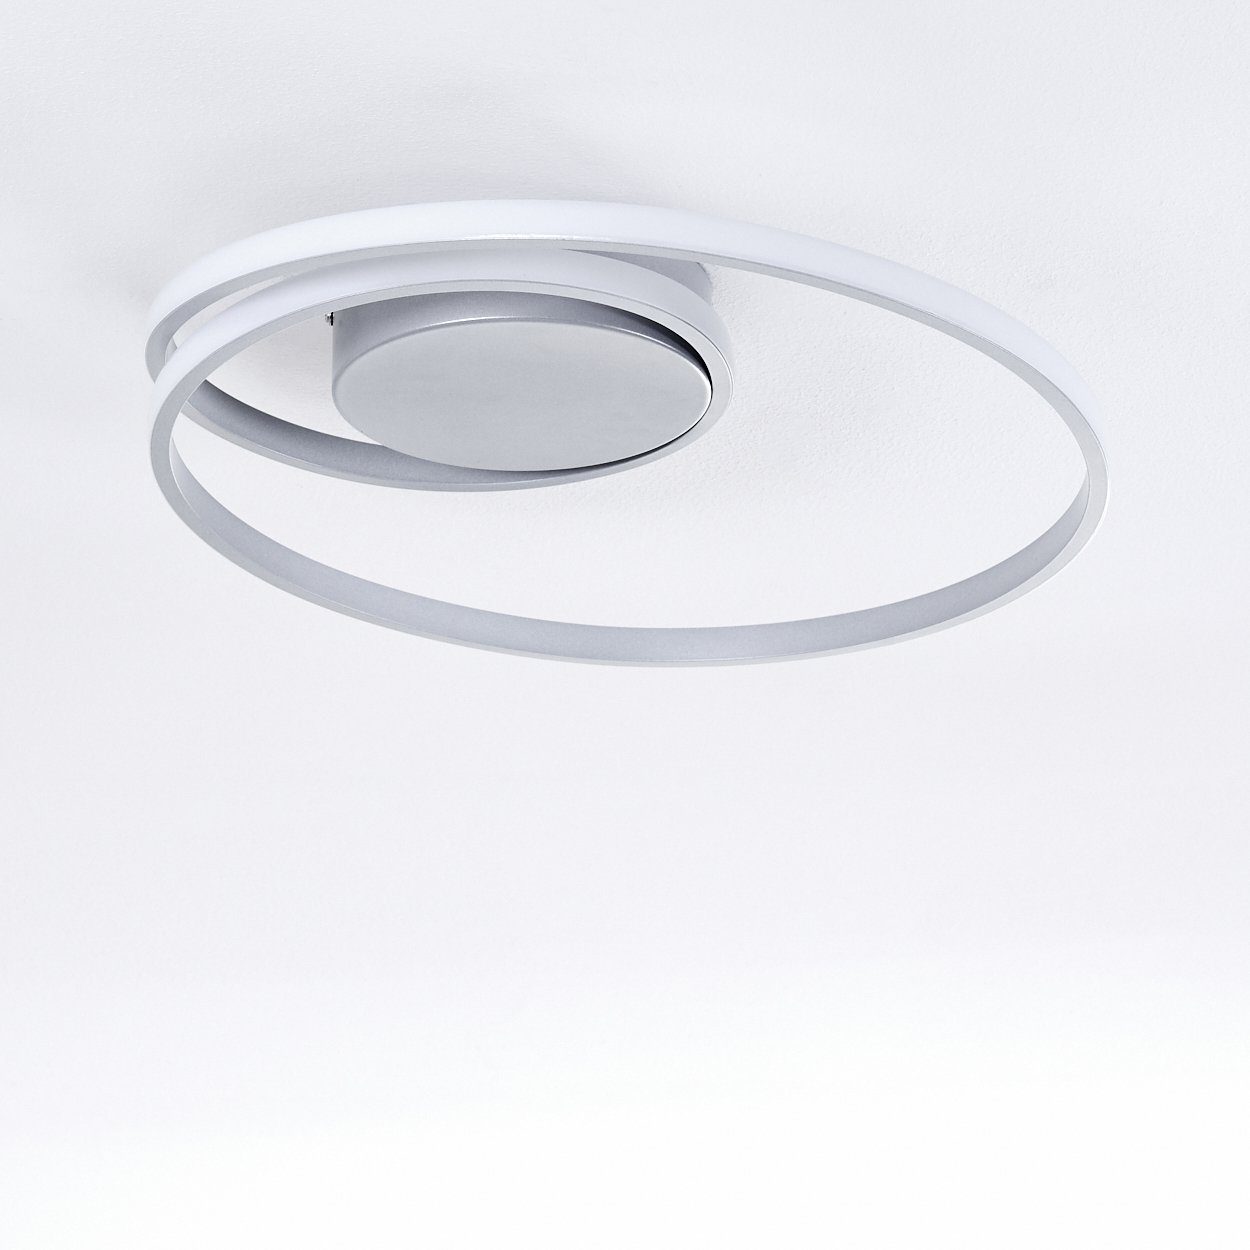 Kelvin, hofstein Lichteffekt mit tollem in Deckenlampe 24 dimmbar Silber/Weiß, 3000 Watt, dimmbare Lichtschalter, »Apagni« über Metall Deckenleuchte aus